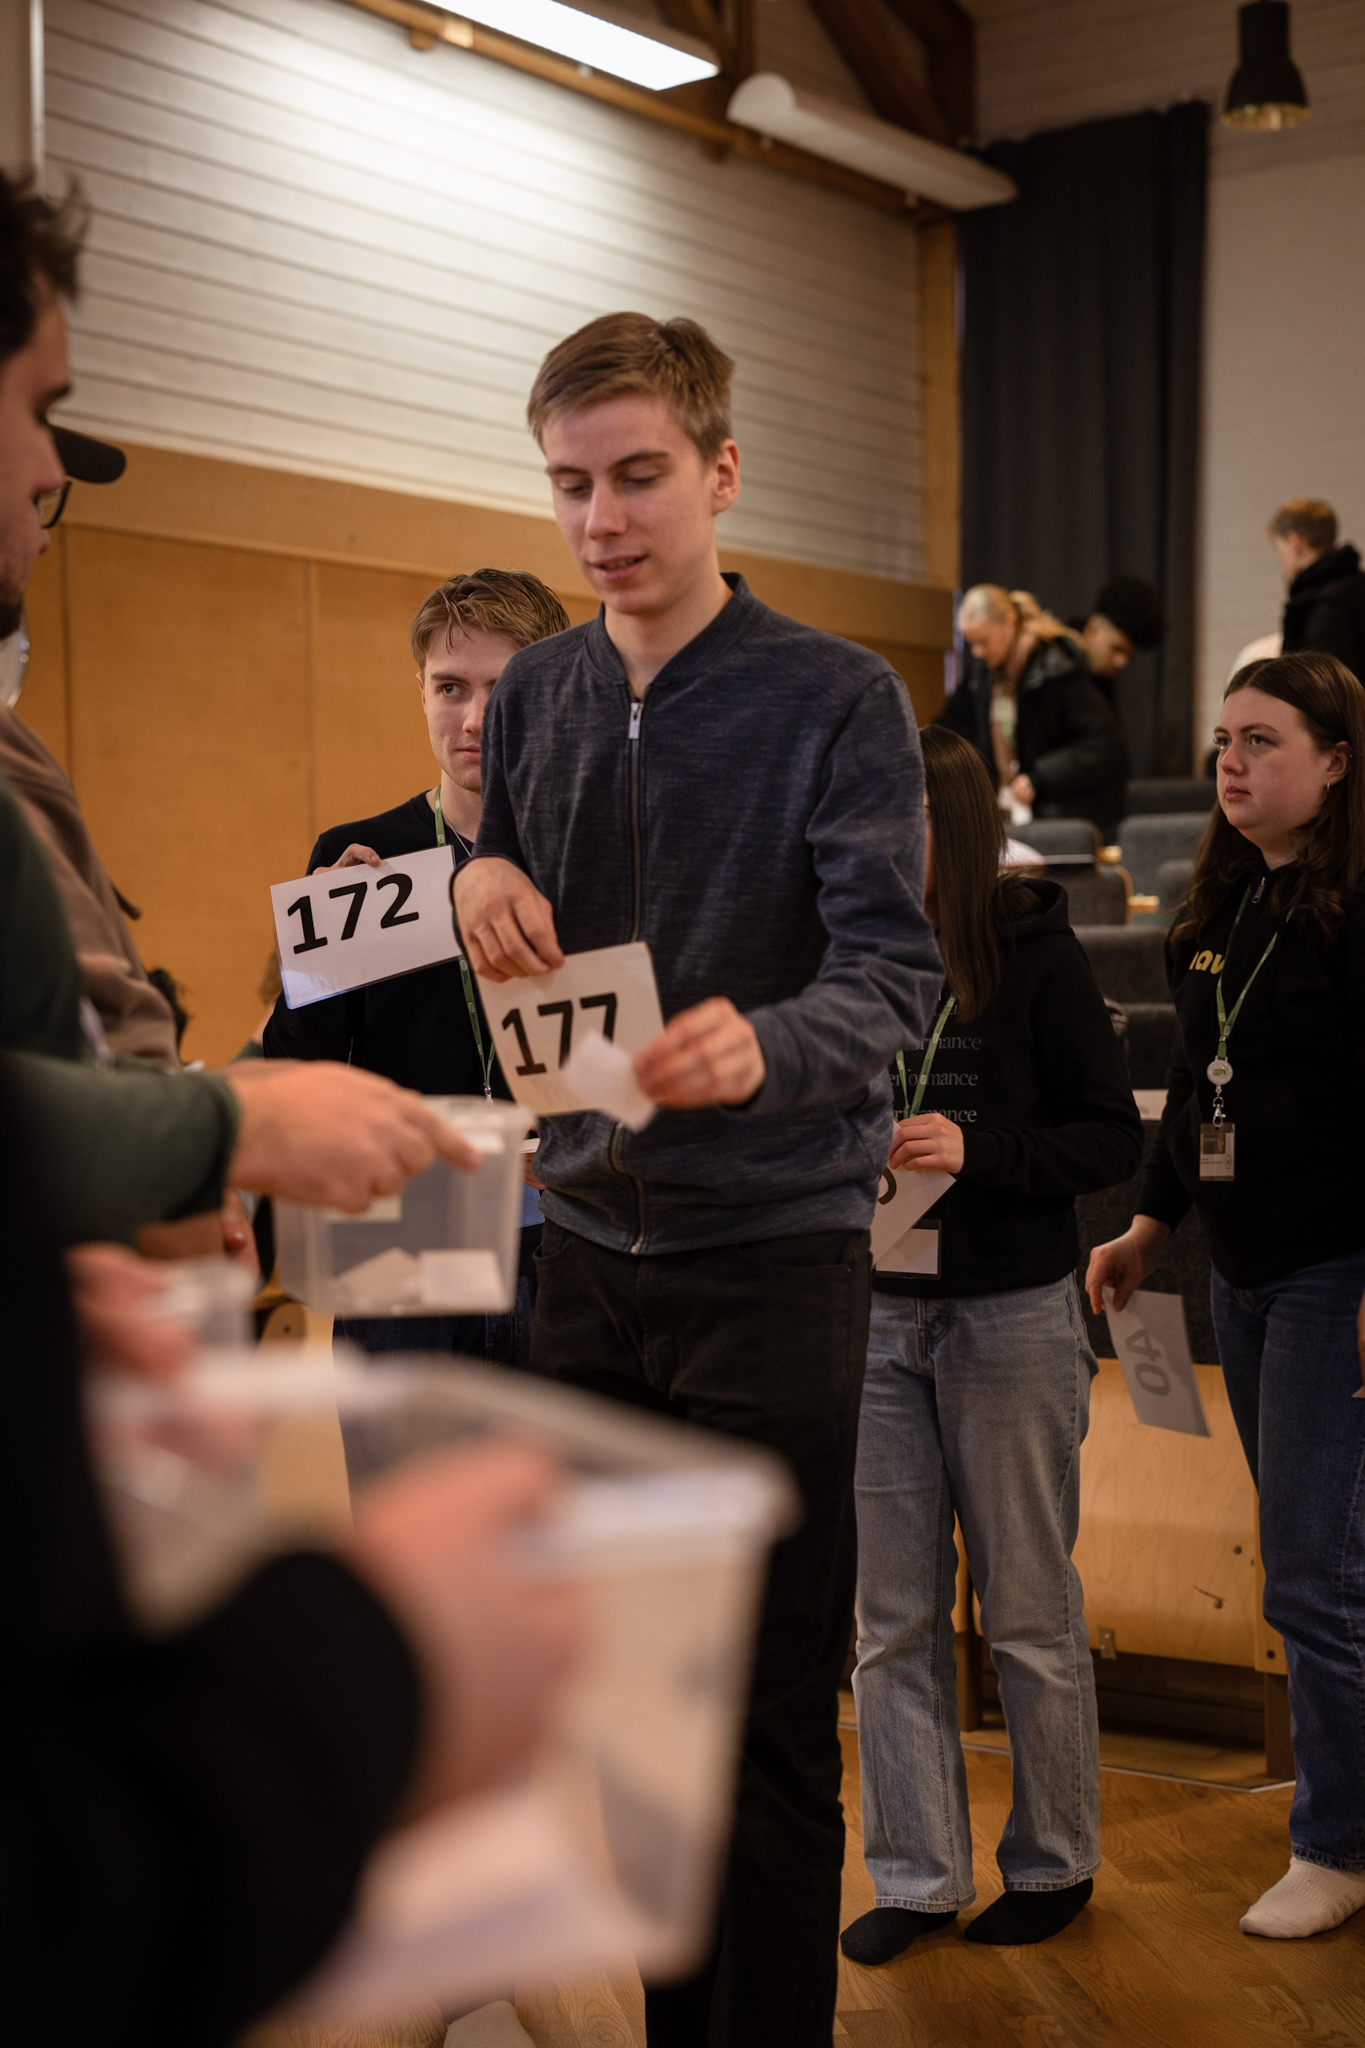 Ungdomar köar med sifferkort för att lägga en röstsedel i en låda.